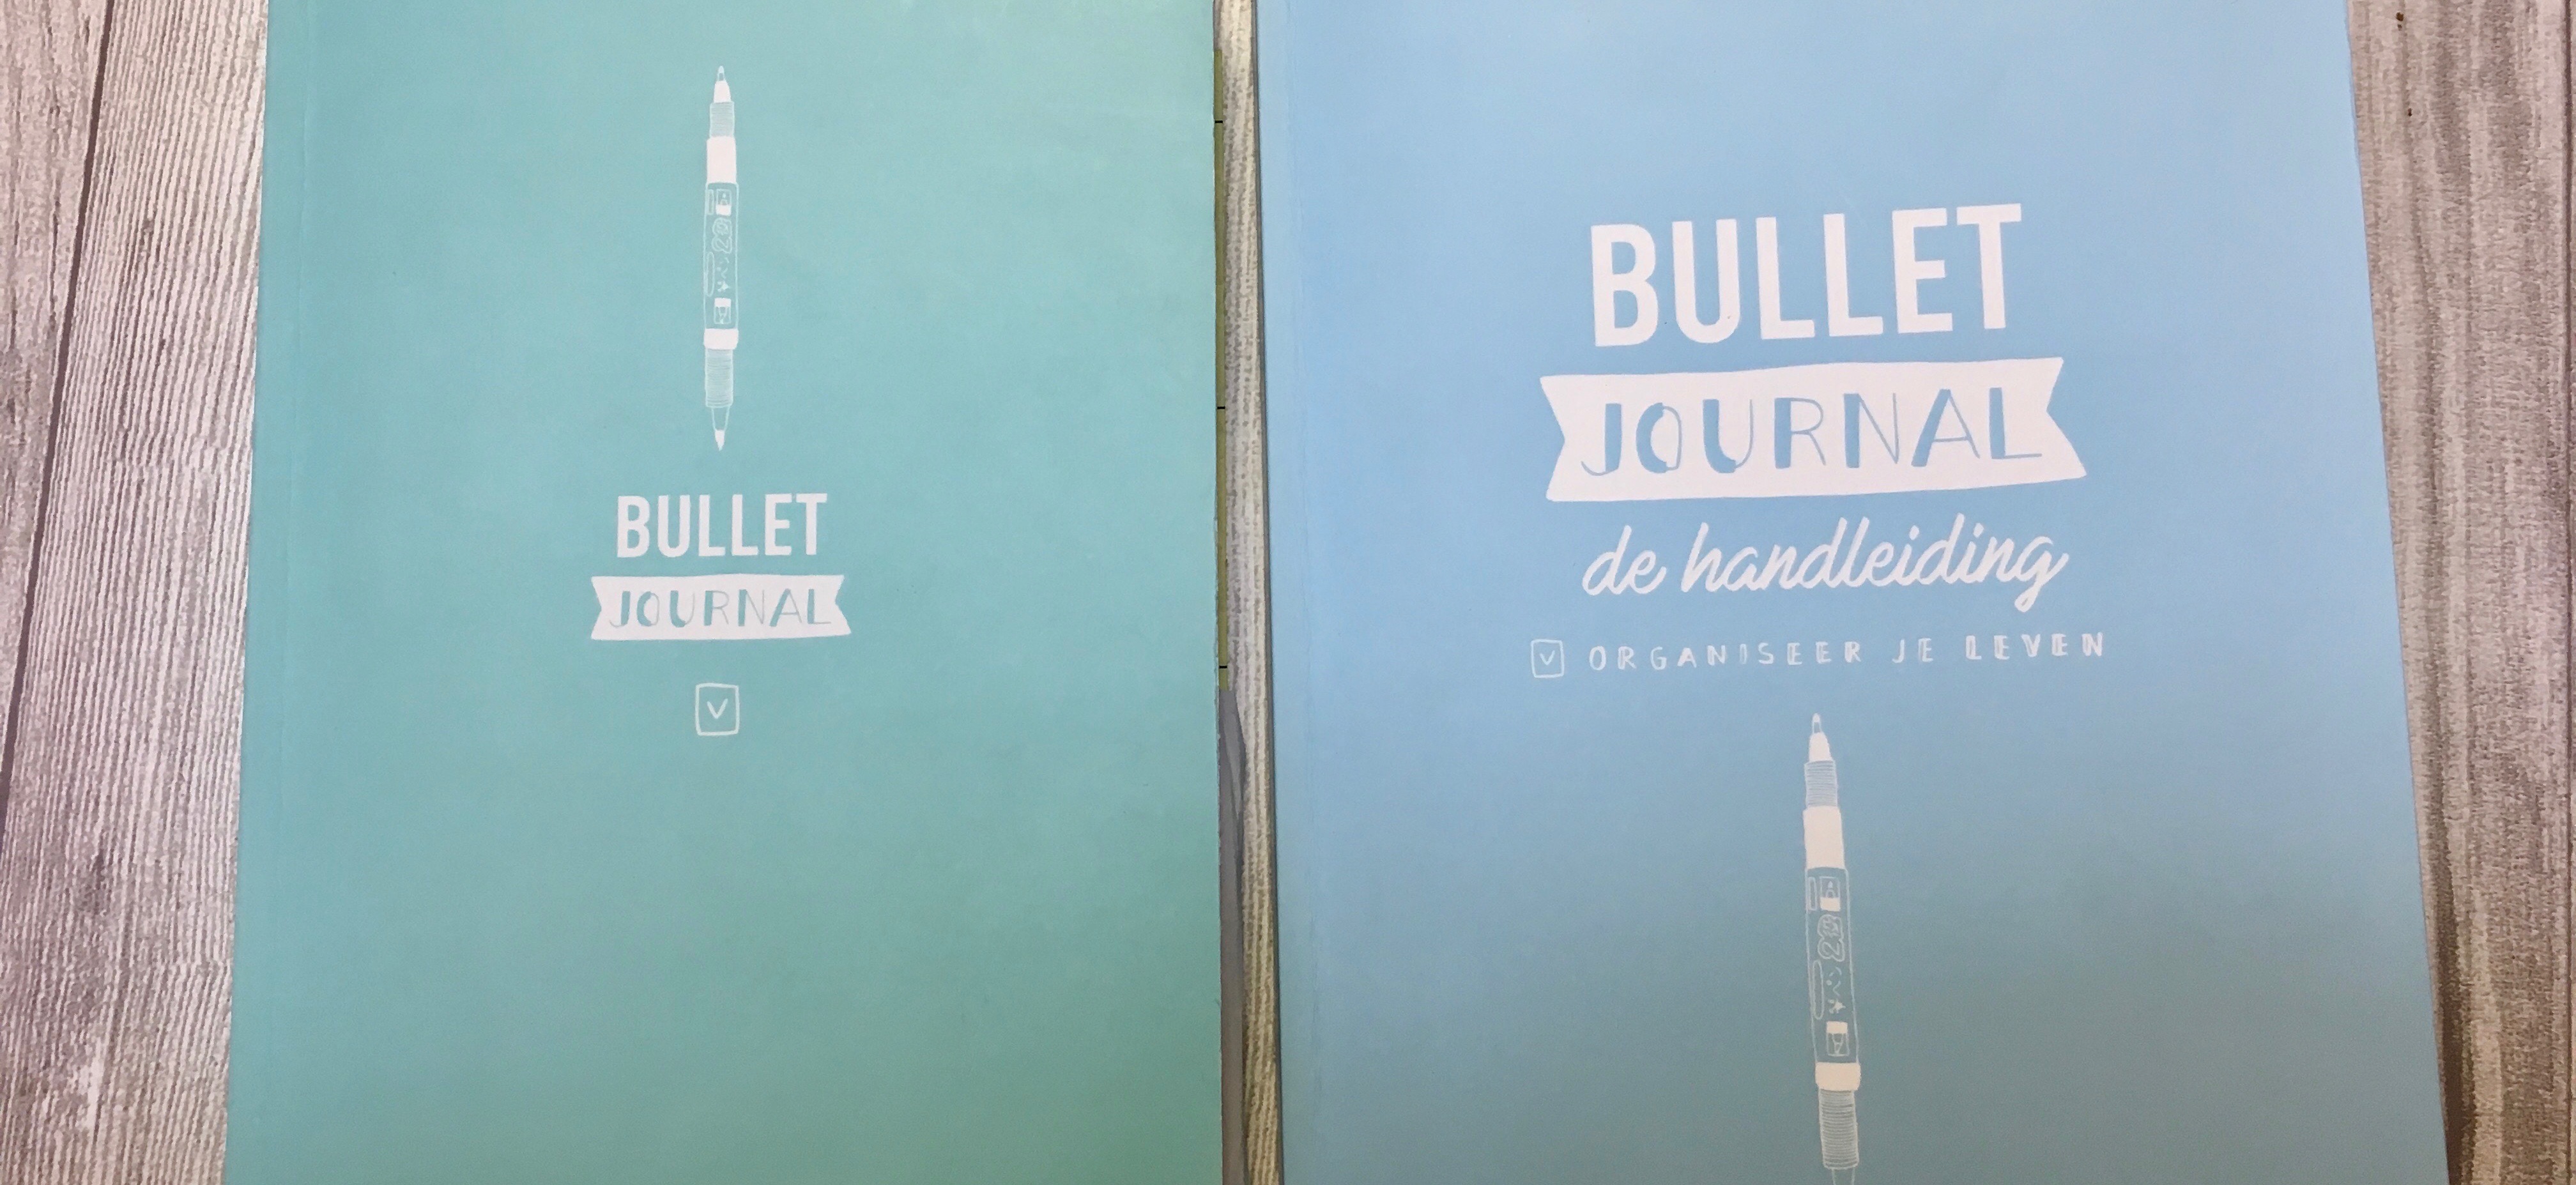 Review: Bullet Journal – de handleiding